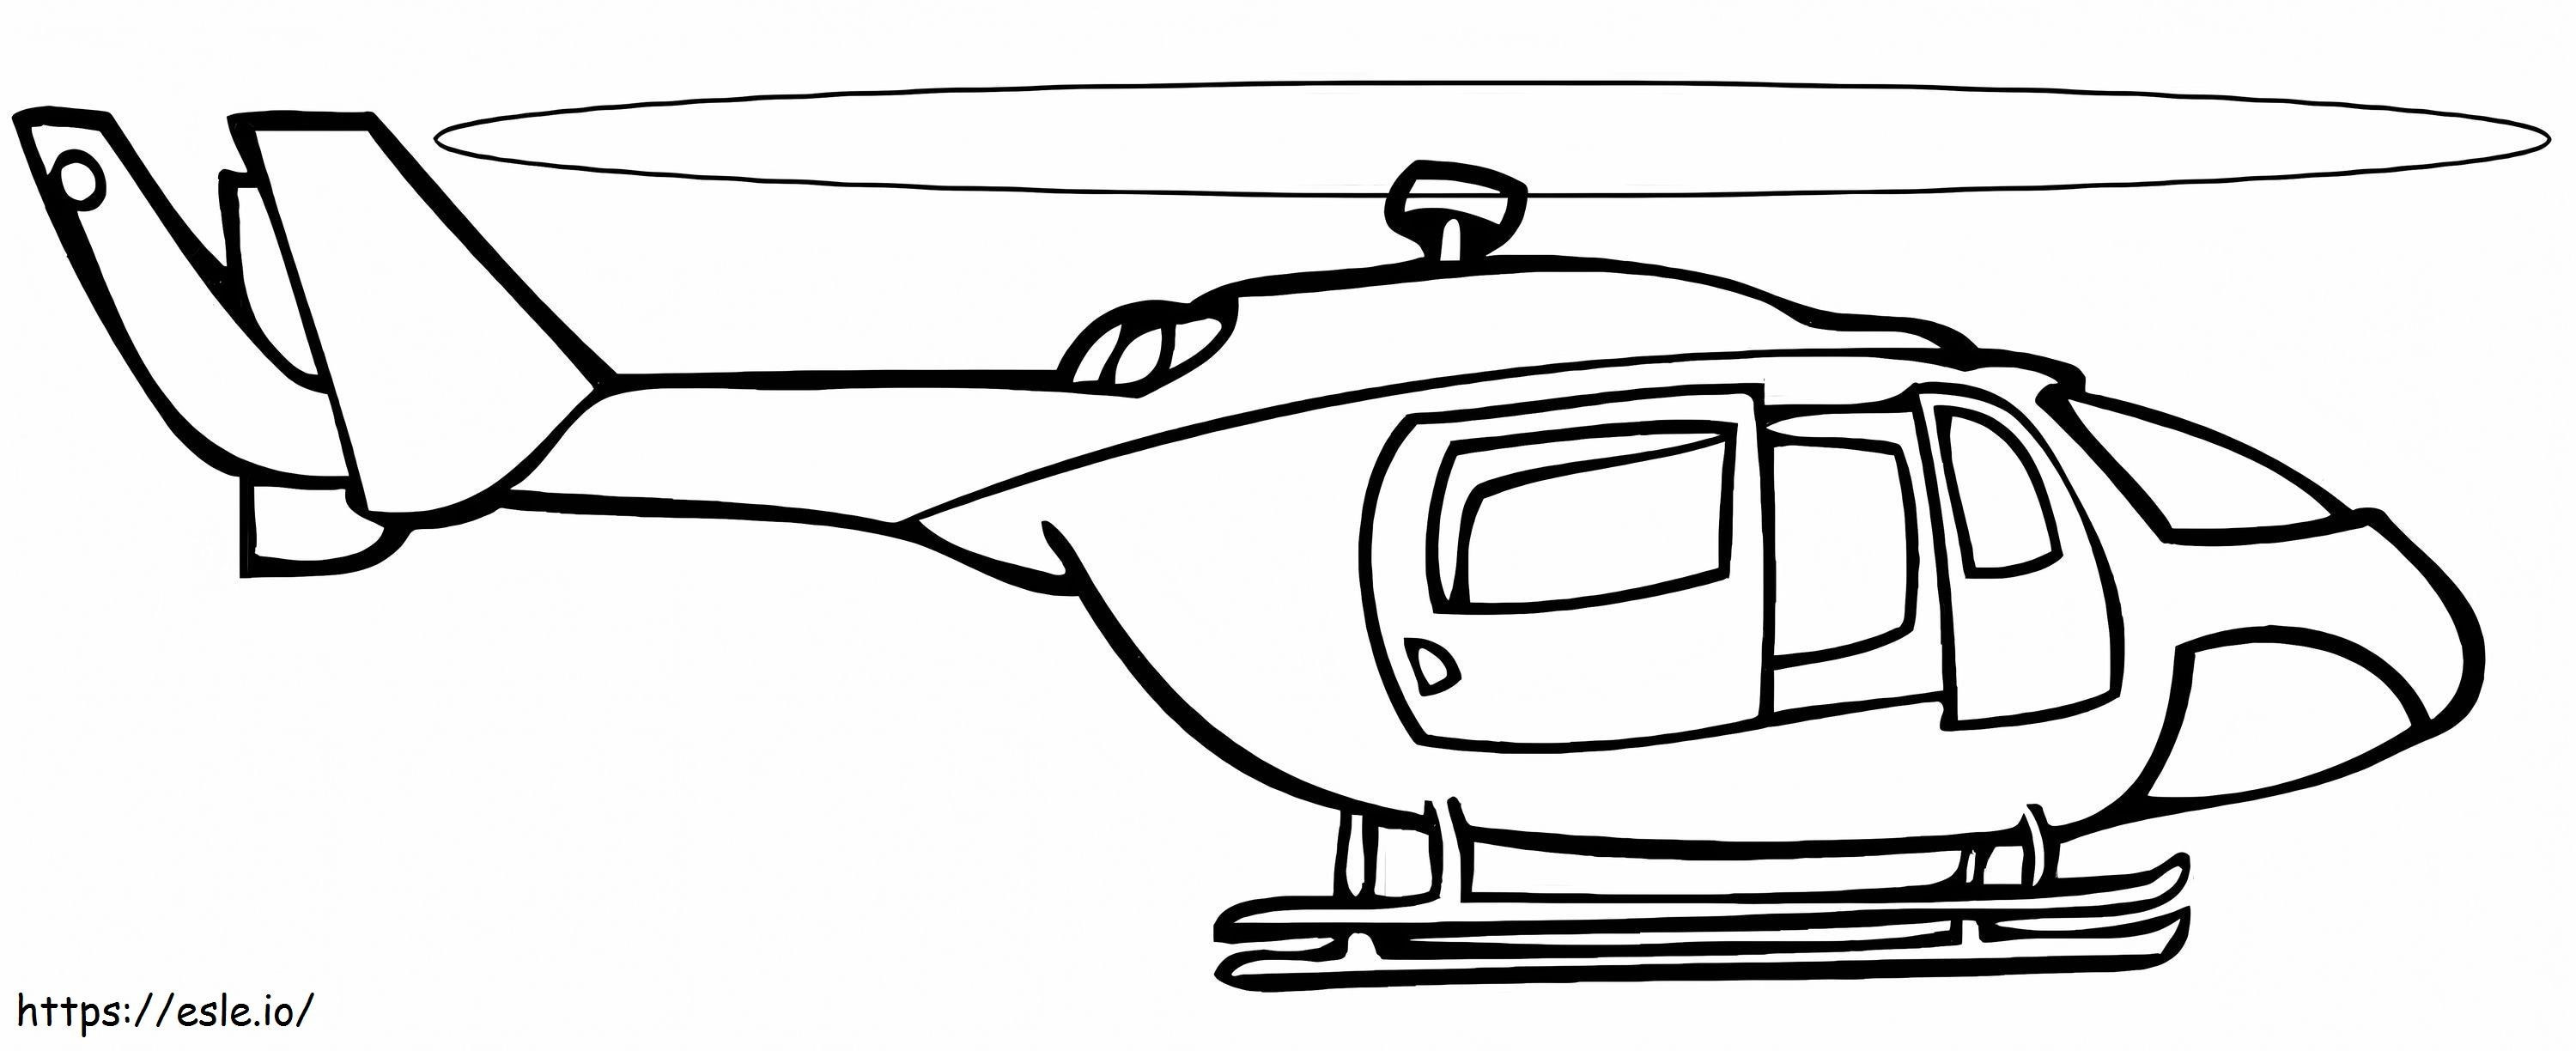 Hubschrauber 4 ausmalbilder